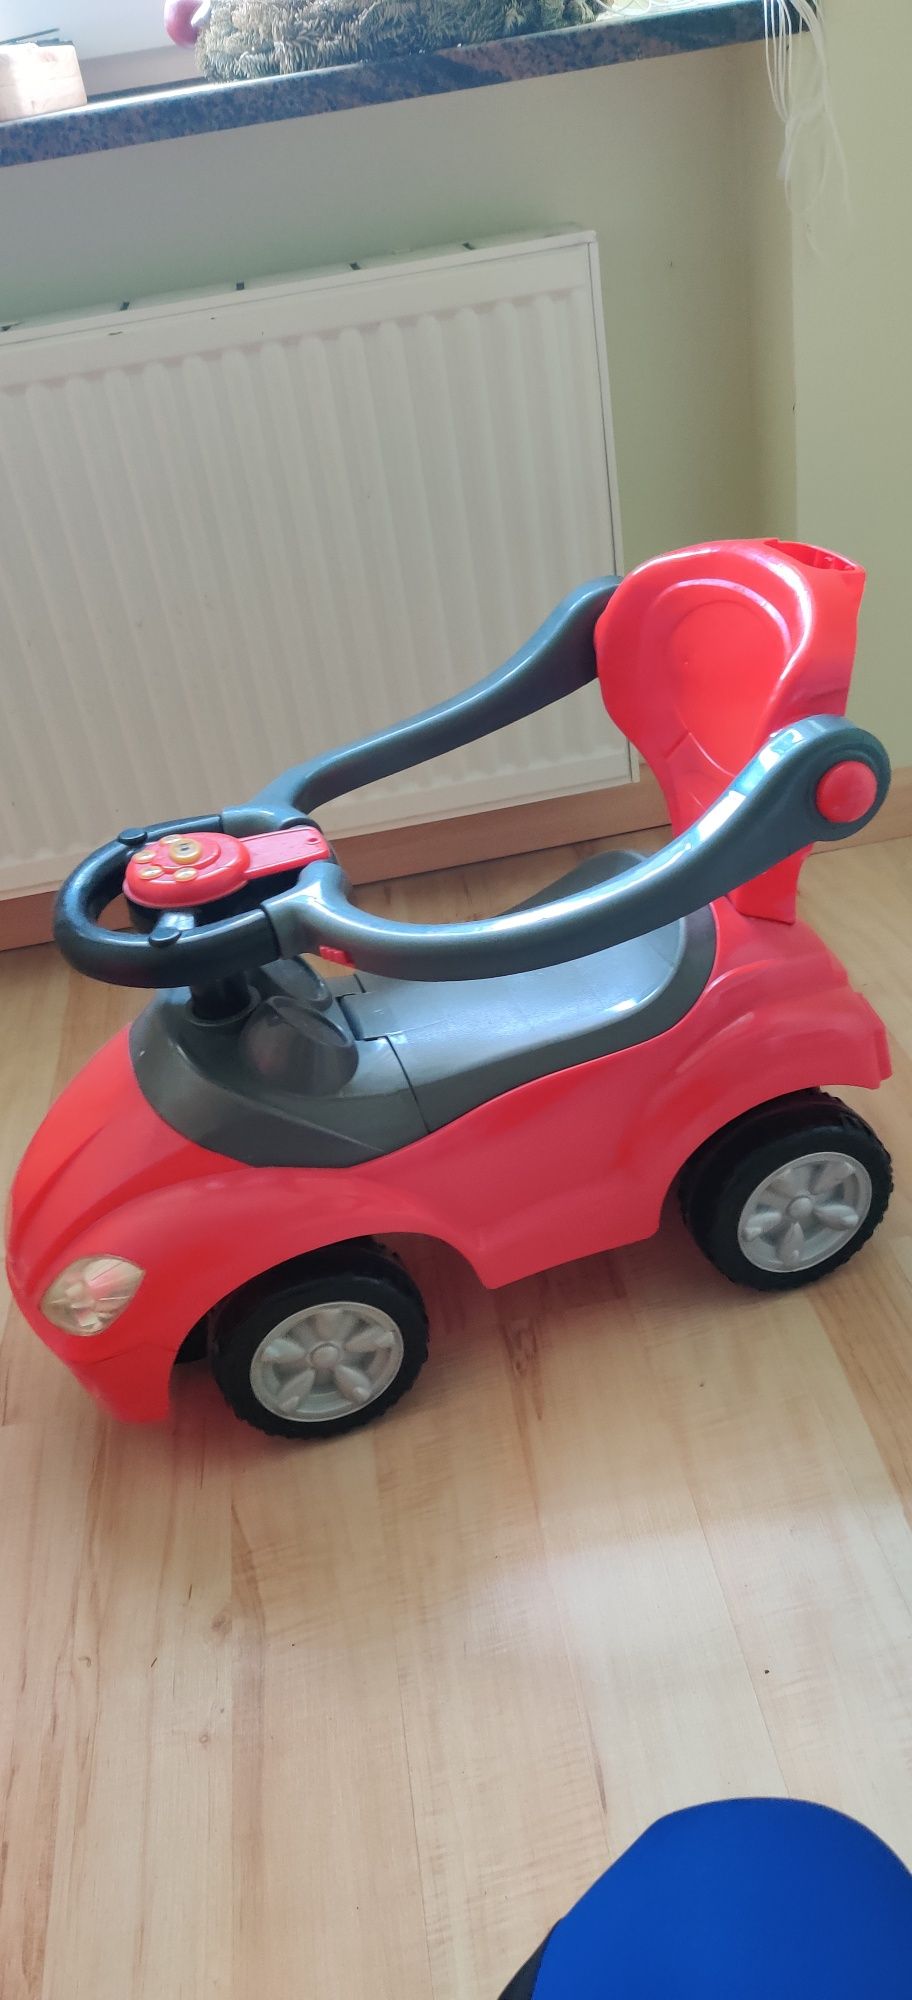 Samochód dziecięcy interaktywny,0-3 latka